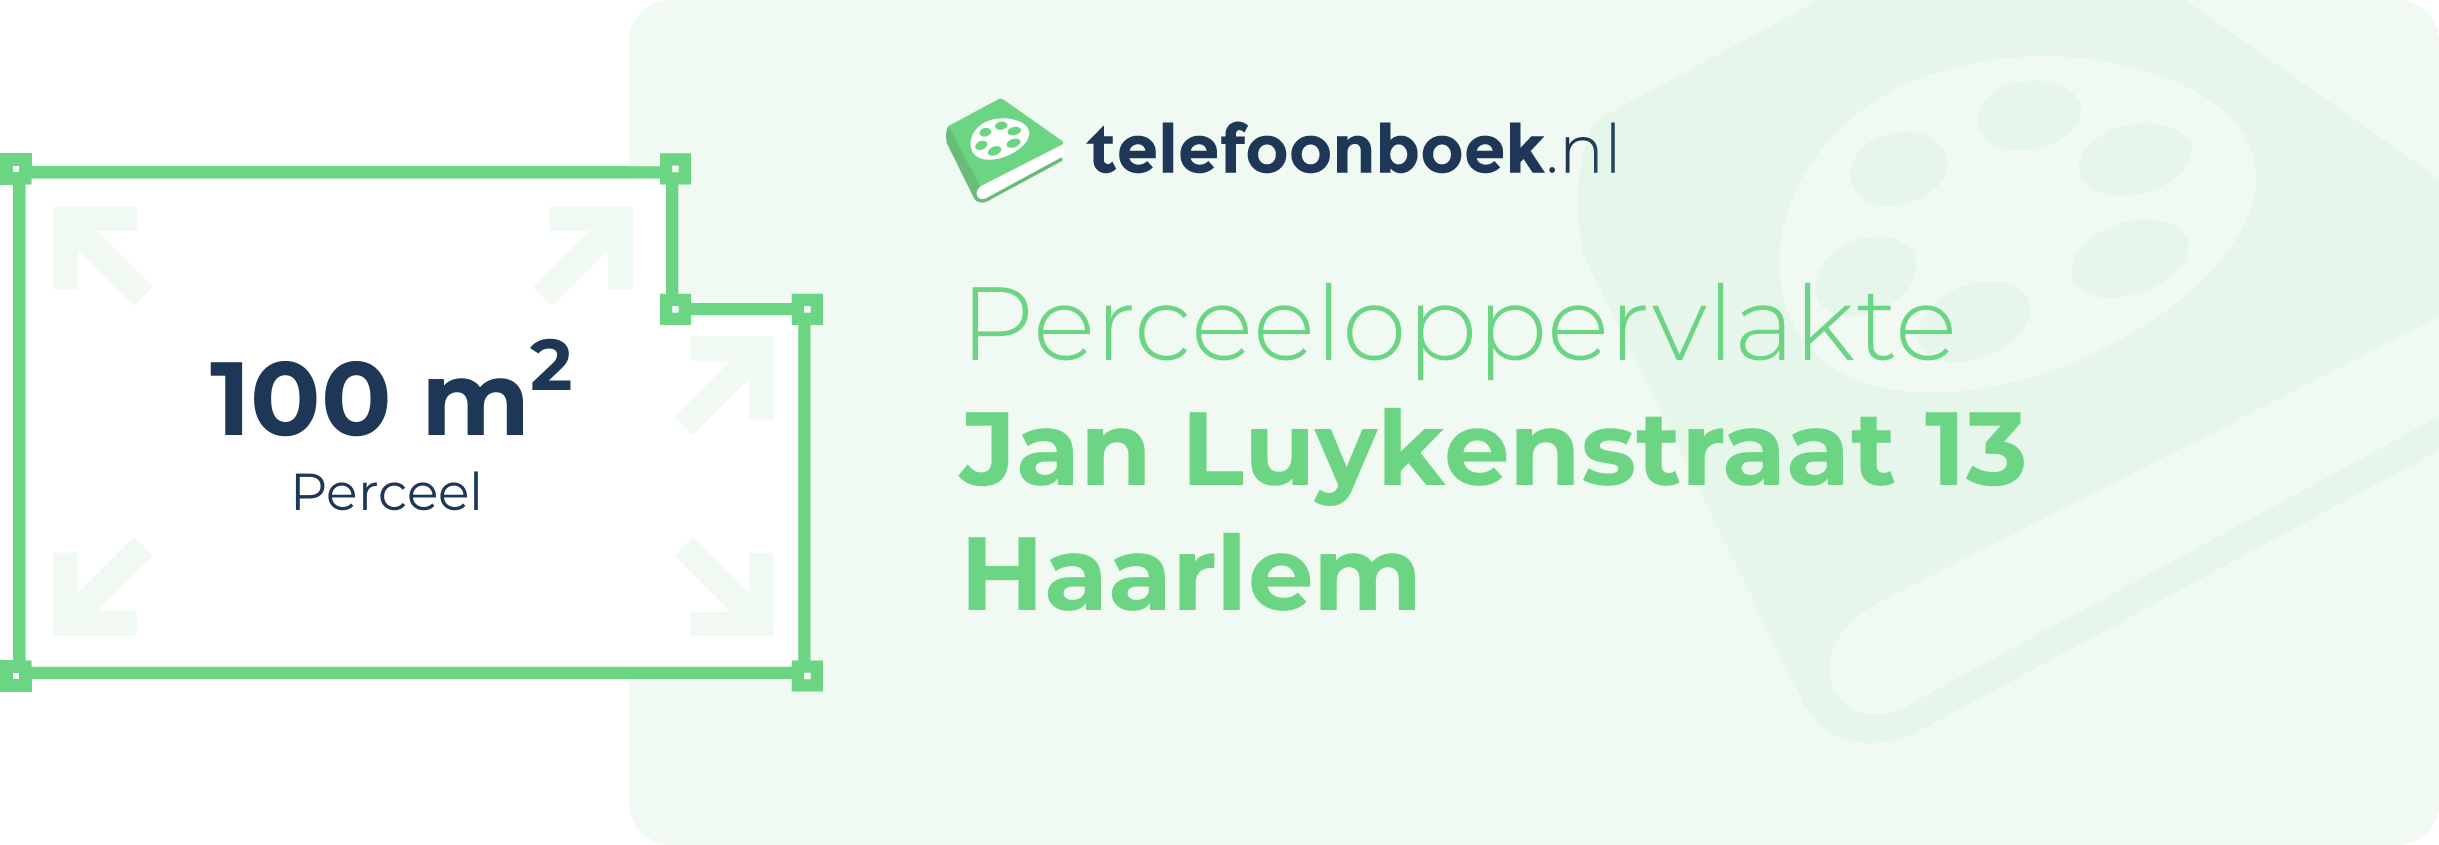 Perceeloppervlakte Jan Luykenstraat 13 Haarlem